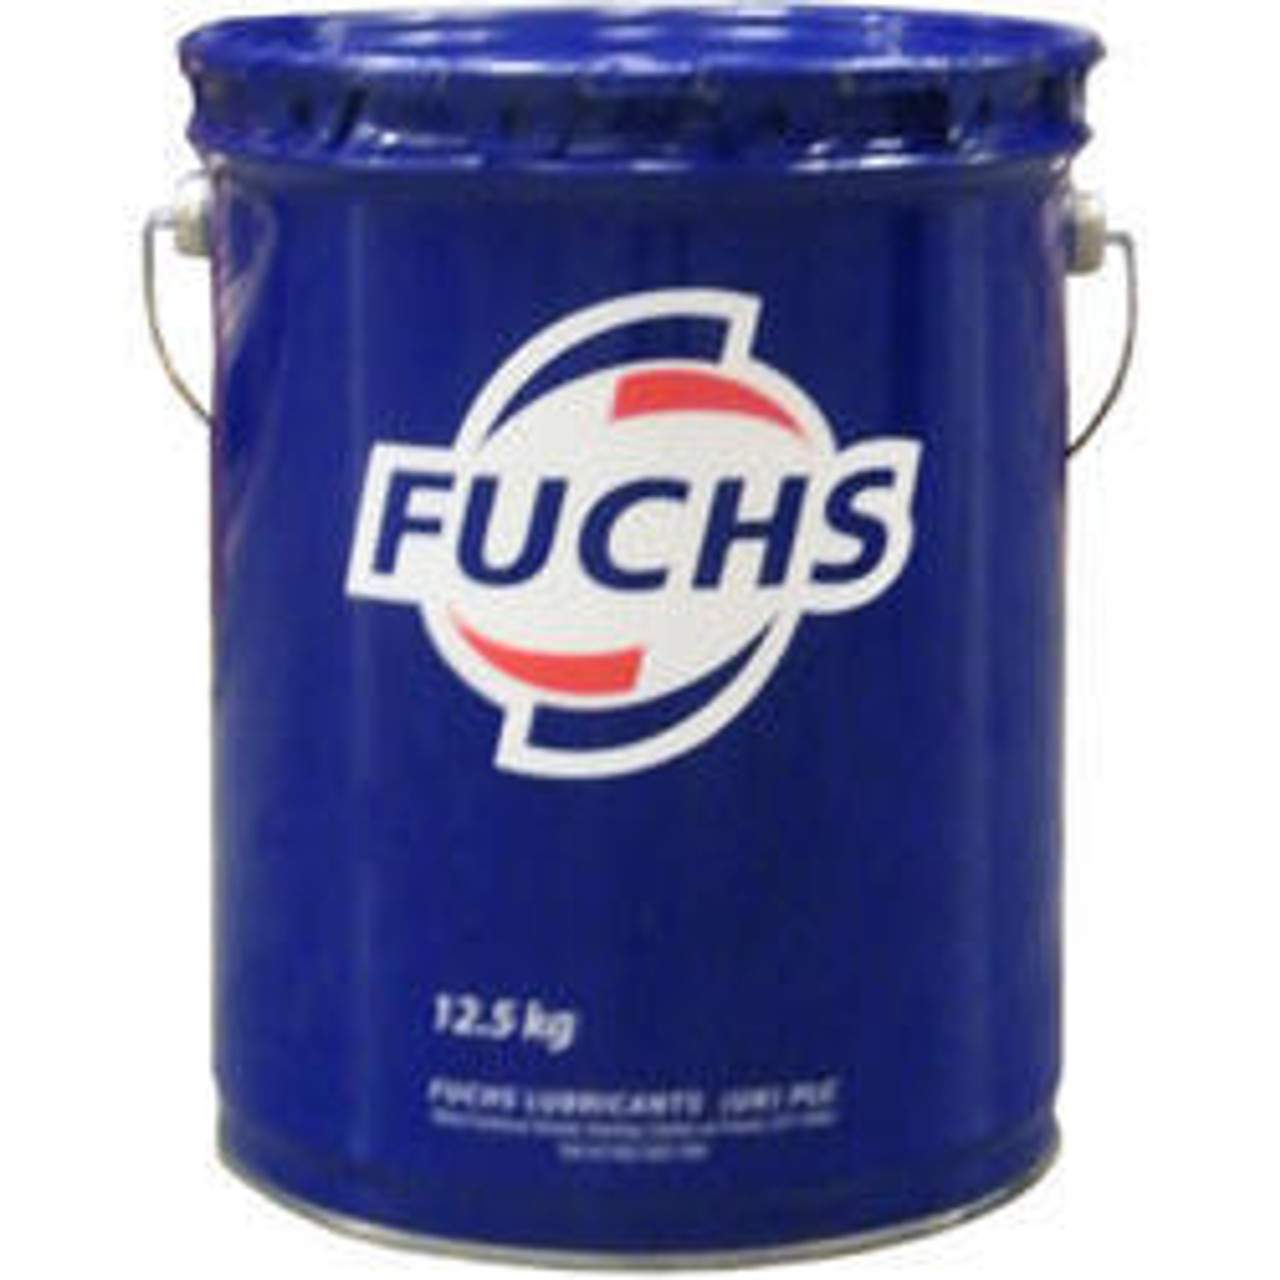 Fuchs Locolub Eco - 15 kg Pails